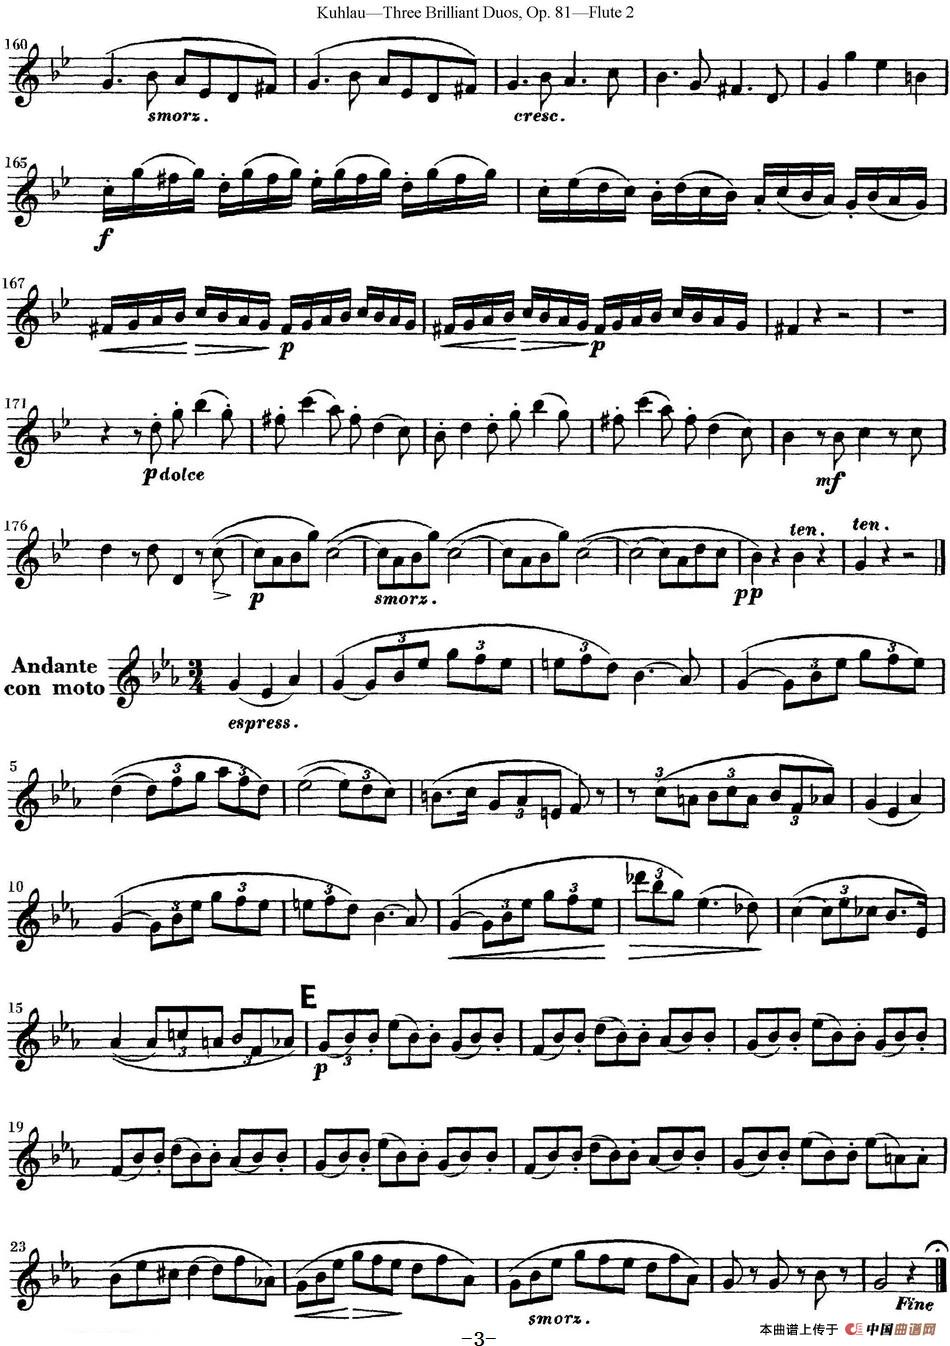 库劳长笛二重奏练习三段OP.81——Flute 2（NO.3）